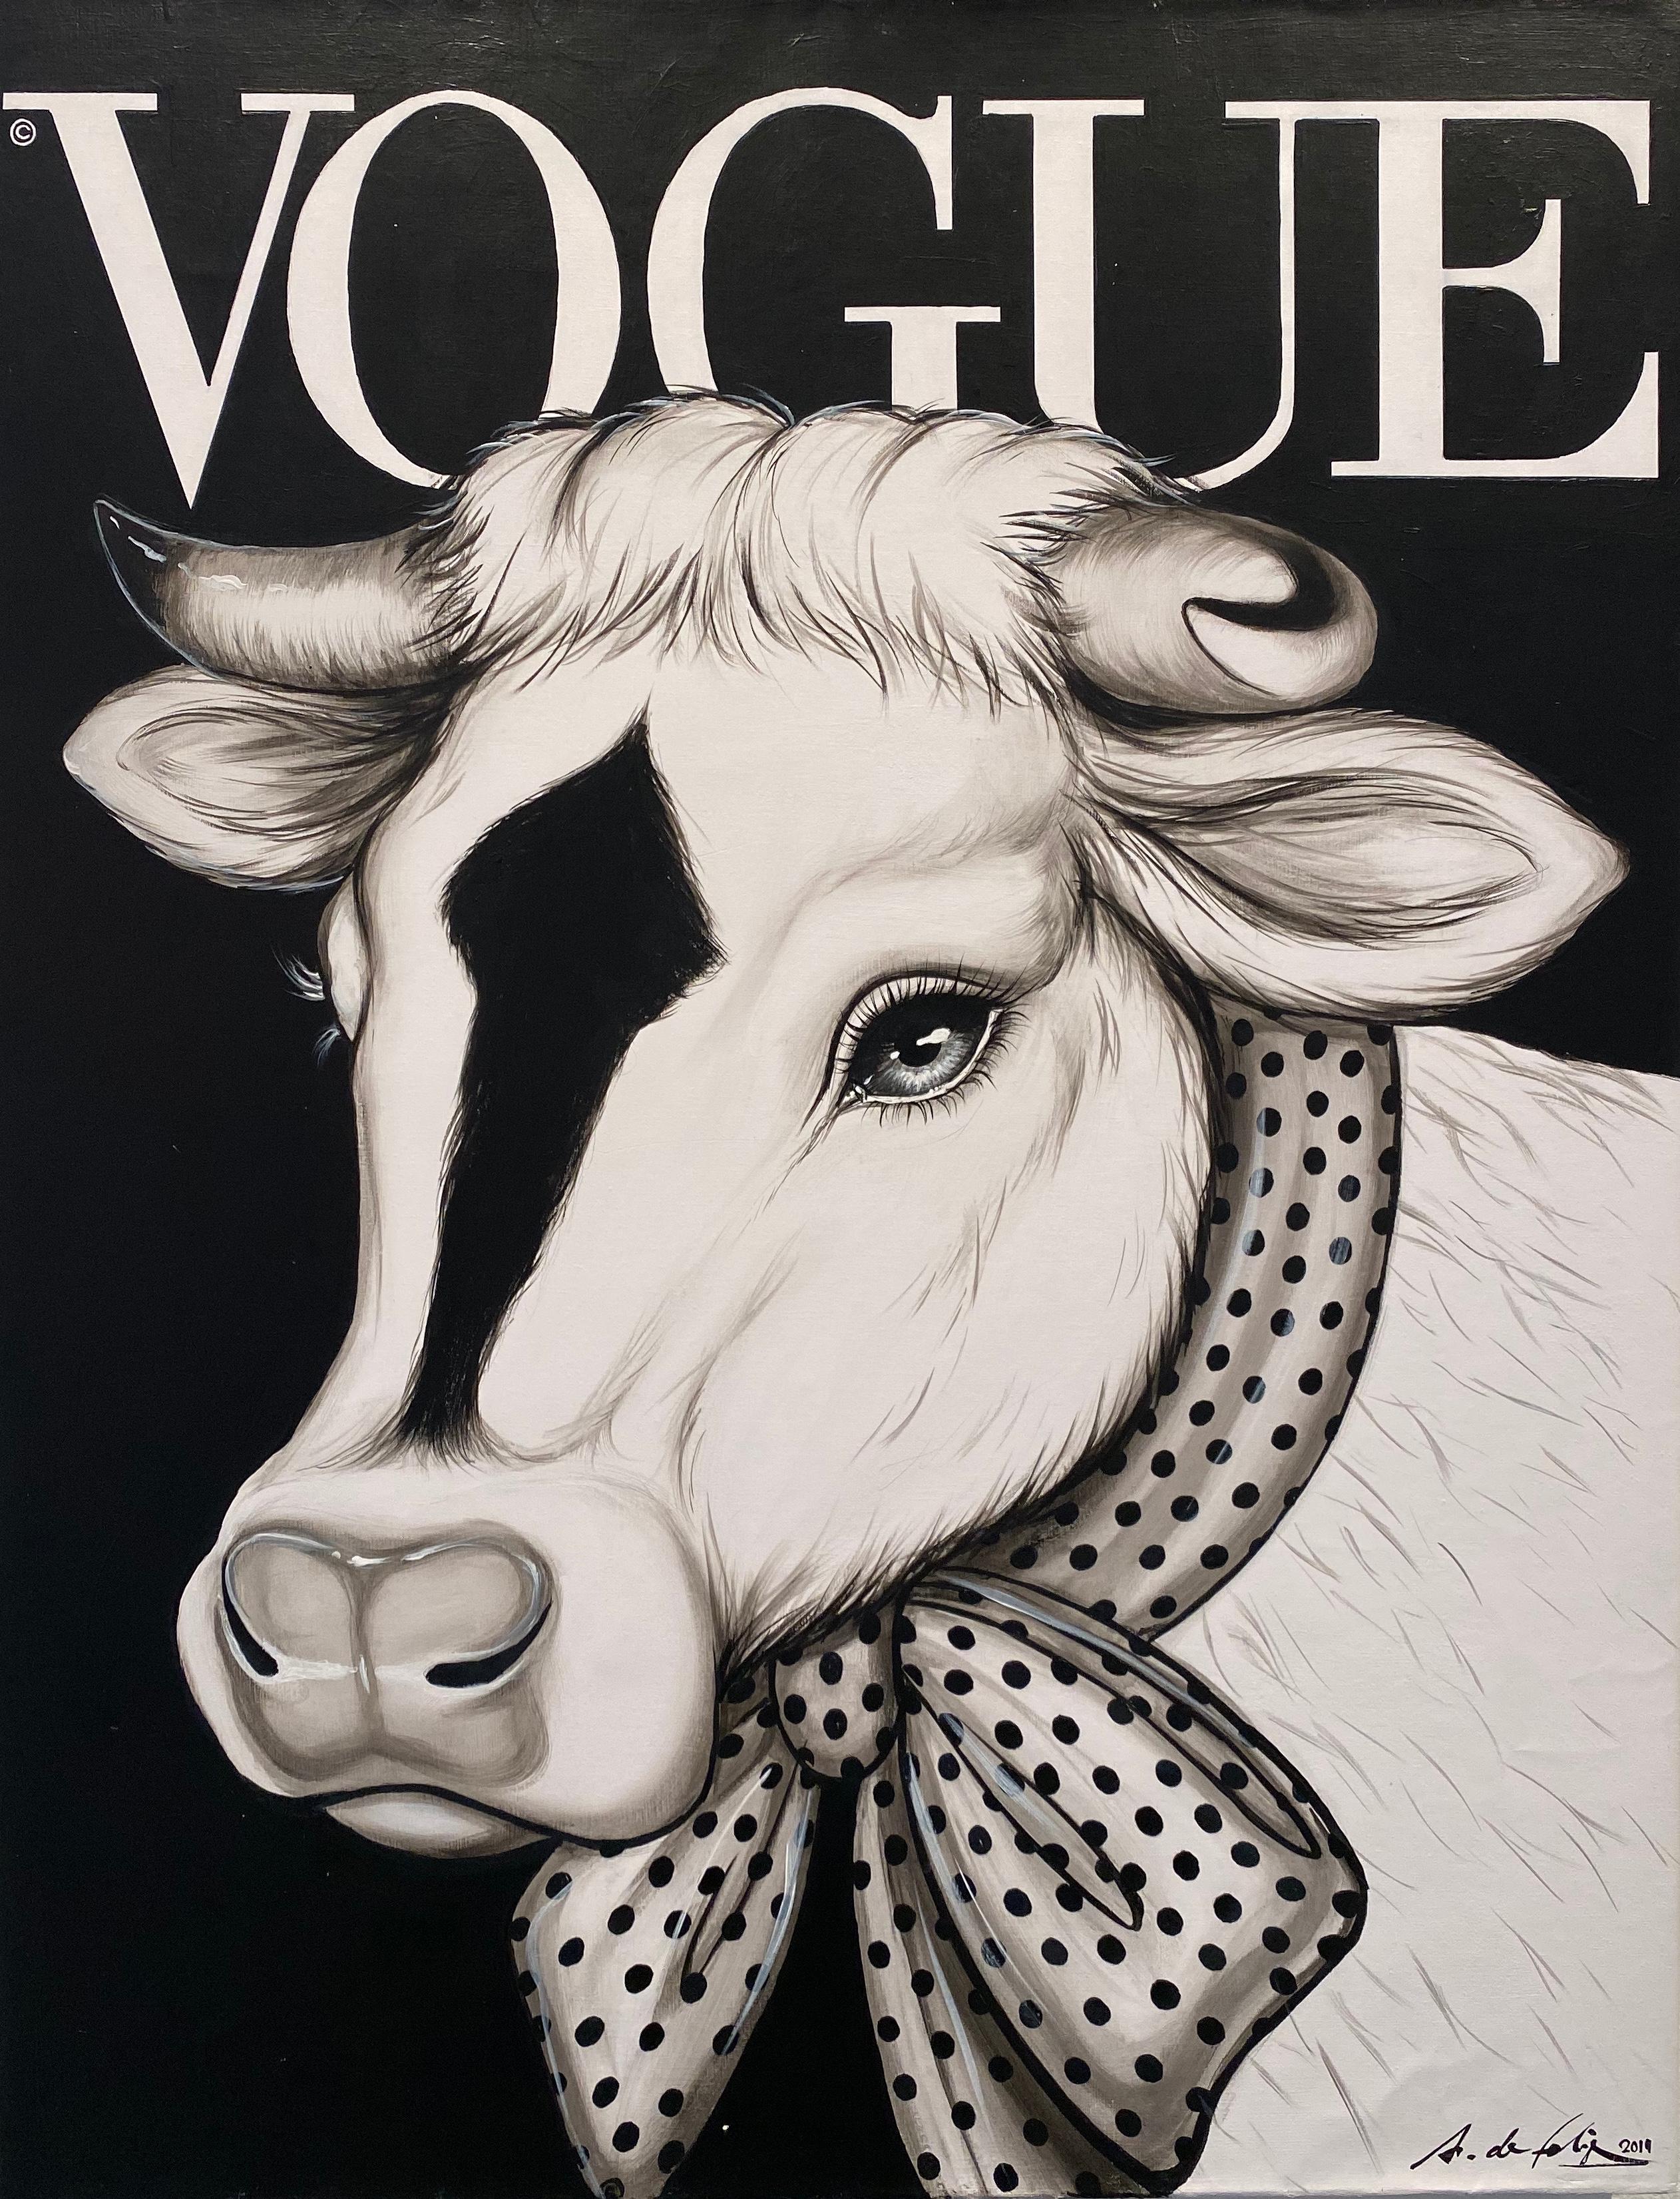 Vaca Vogue fondo negro - Painting by Antonio de Felipe